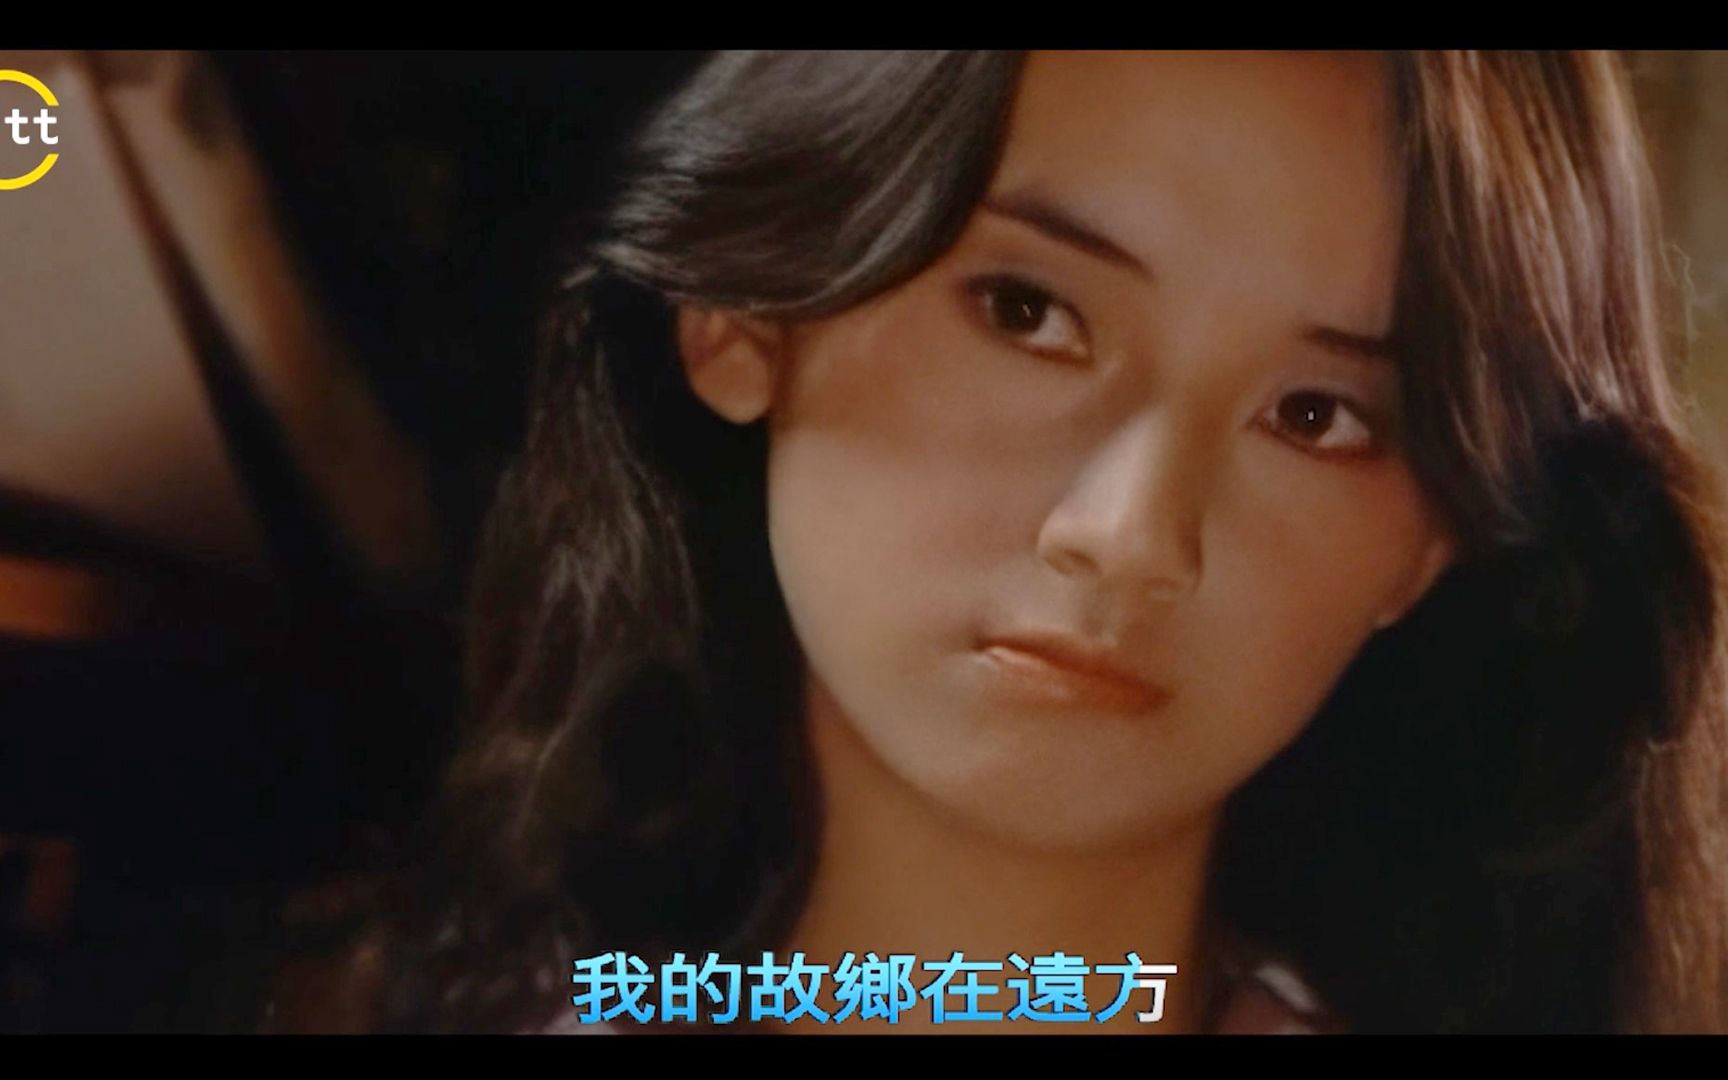 1979年台湾电影《欢颜》插曲《橄榄树》,高清剪辑清纯女生胡慧中演绎